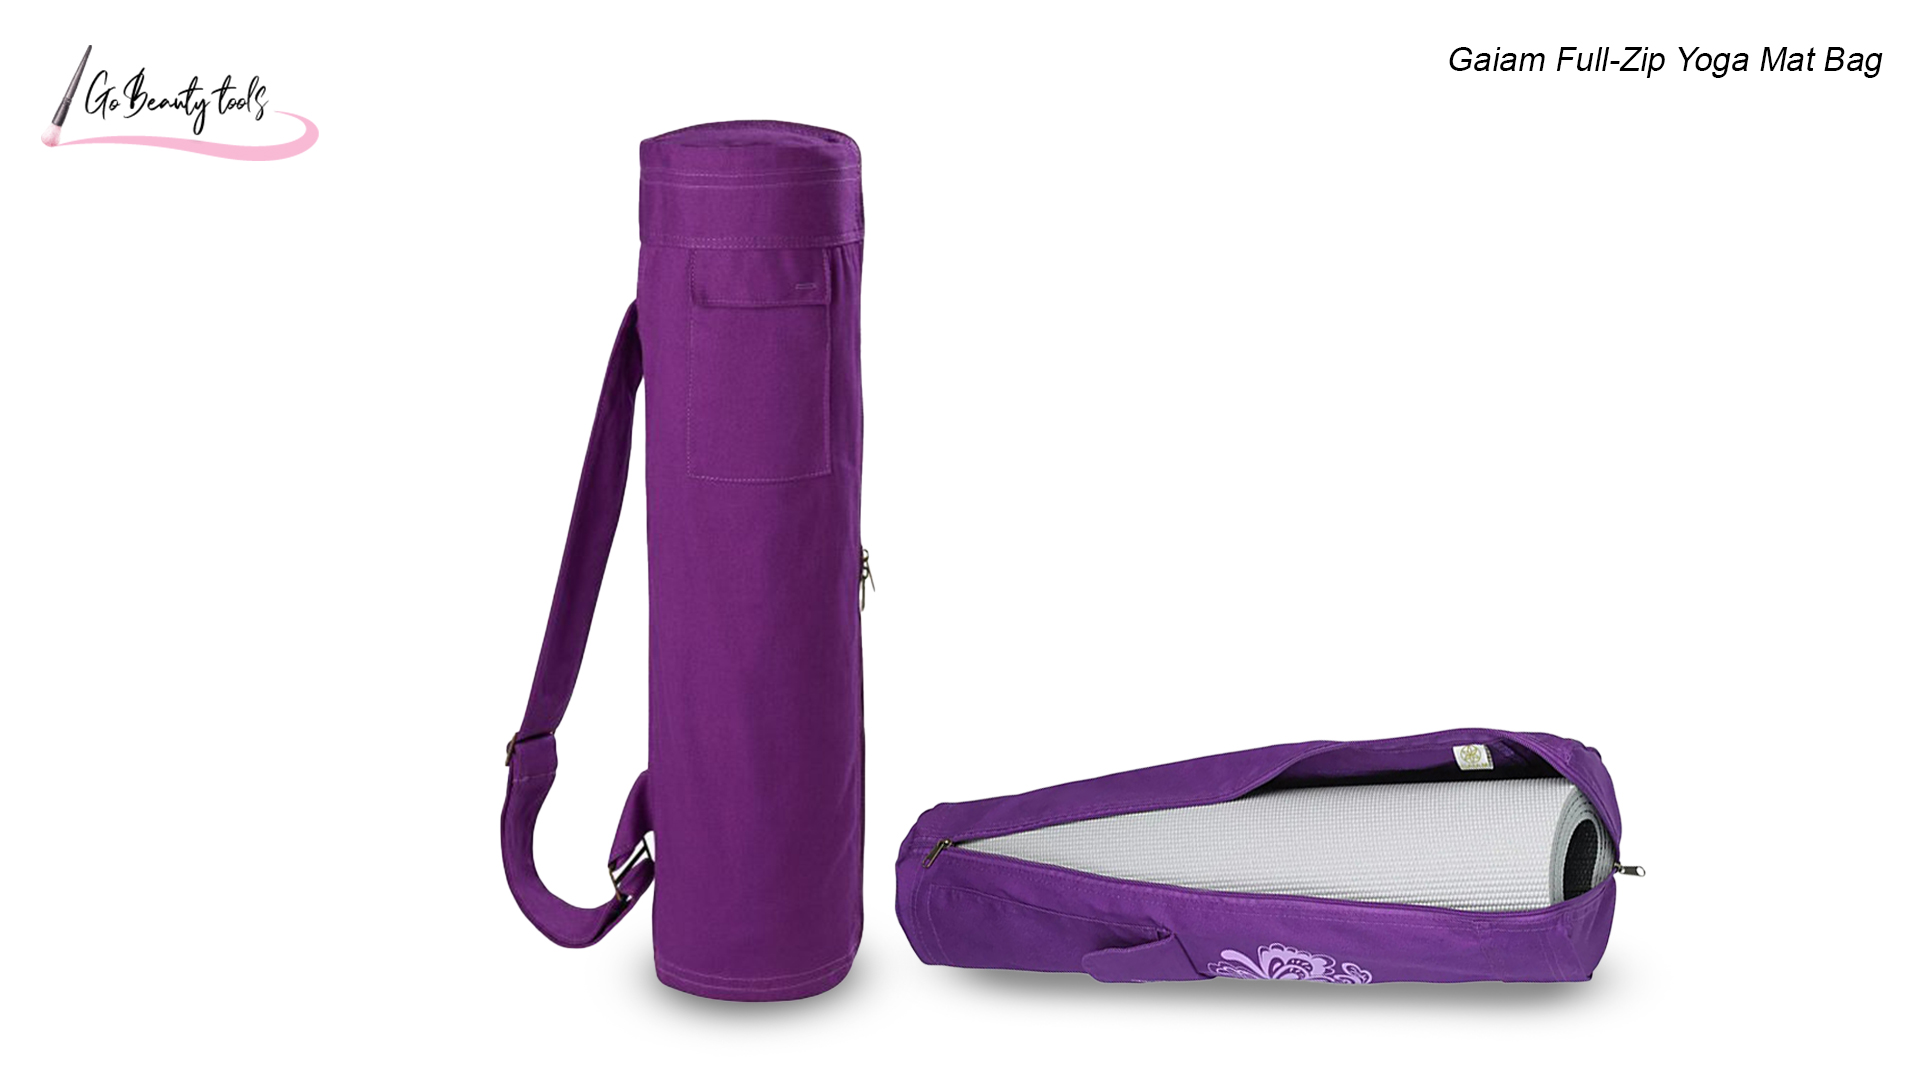 Gaiam Full-Zip Yoga Mat Bag